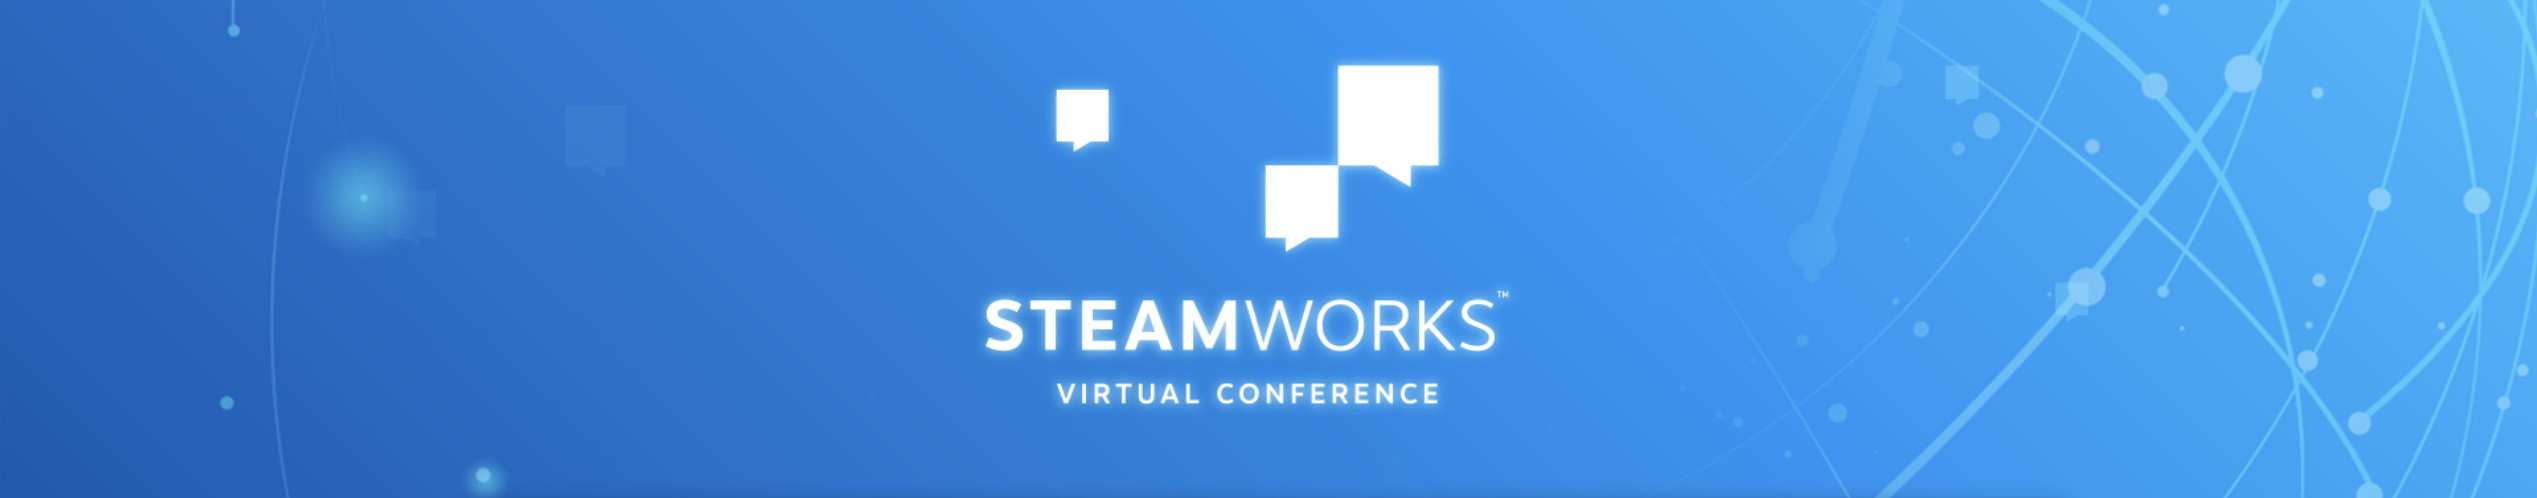 首届Steamworks虚拟会议将于4月20日举行